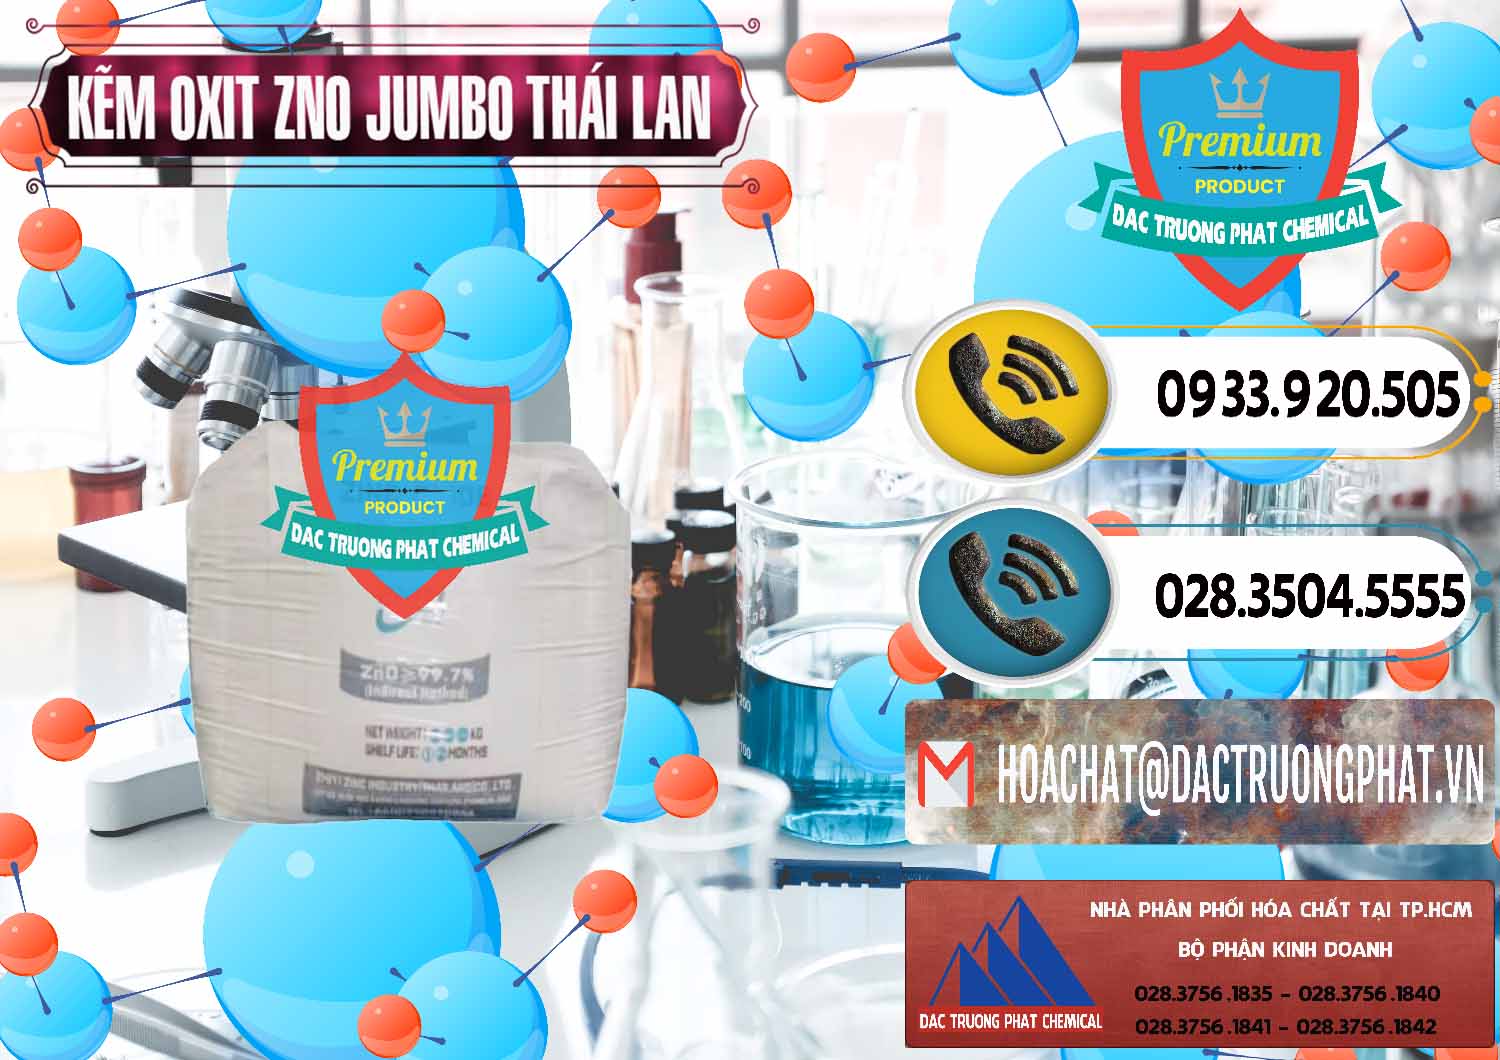 Công ty chuyên nhập khẩu - bán Zinc Oxide - Bột Kẽm Oxit ZNO Jumbo Bành Thái Lan Thailand - 0370 - Nơi chuyên nhập khẩu & phân phối hóa chất tại TP.HCM - hoachatdetnhuom.vn